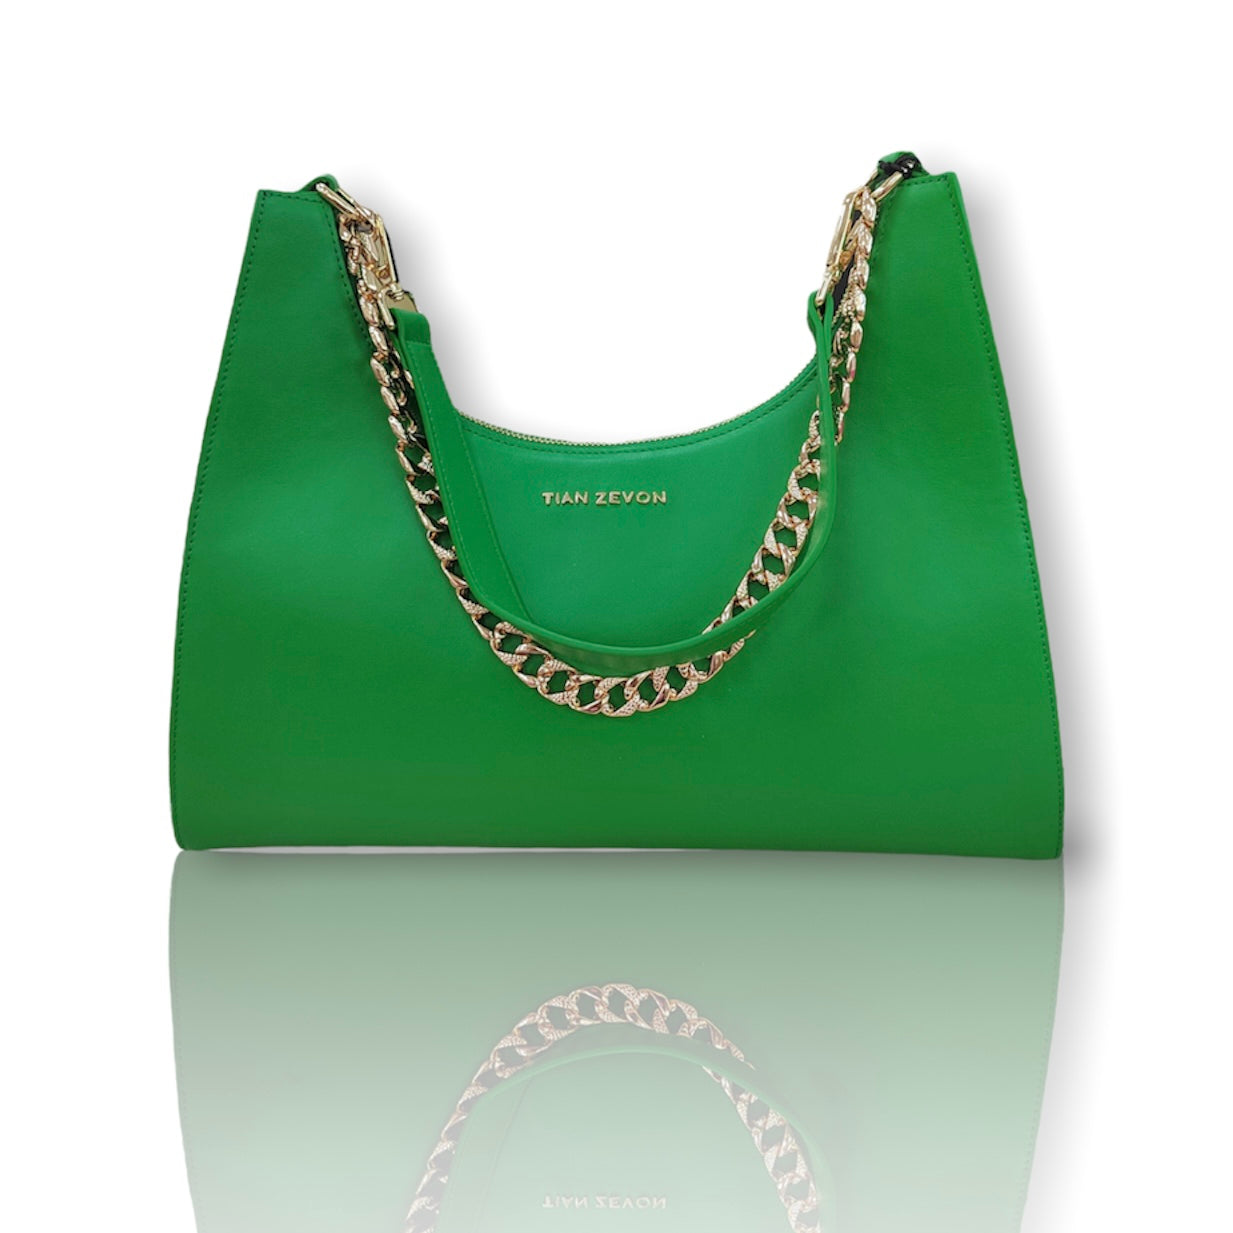 Imani genuine leather shoulder bag- Jade